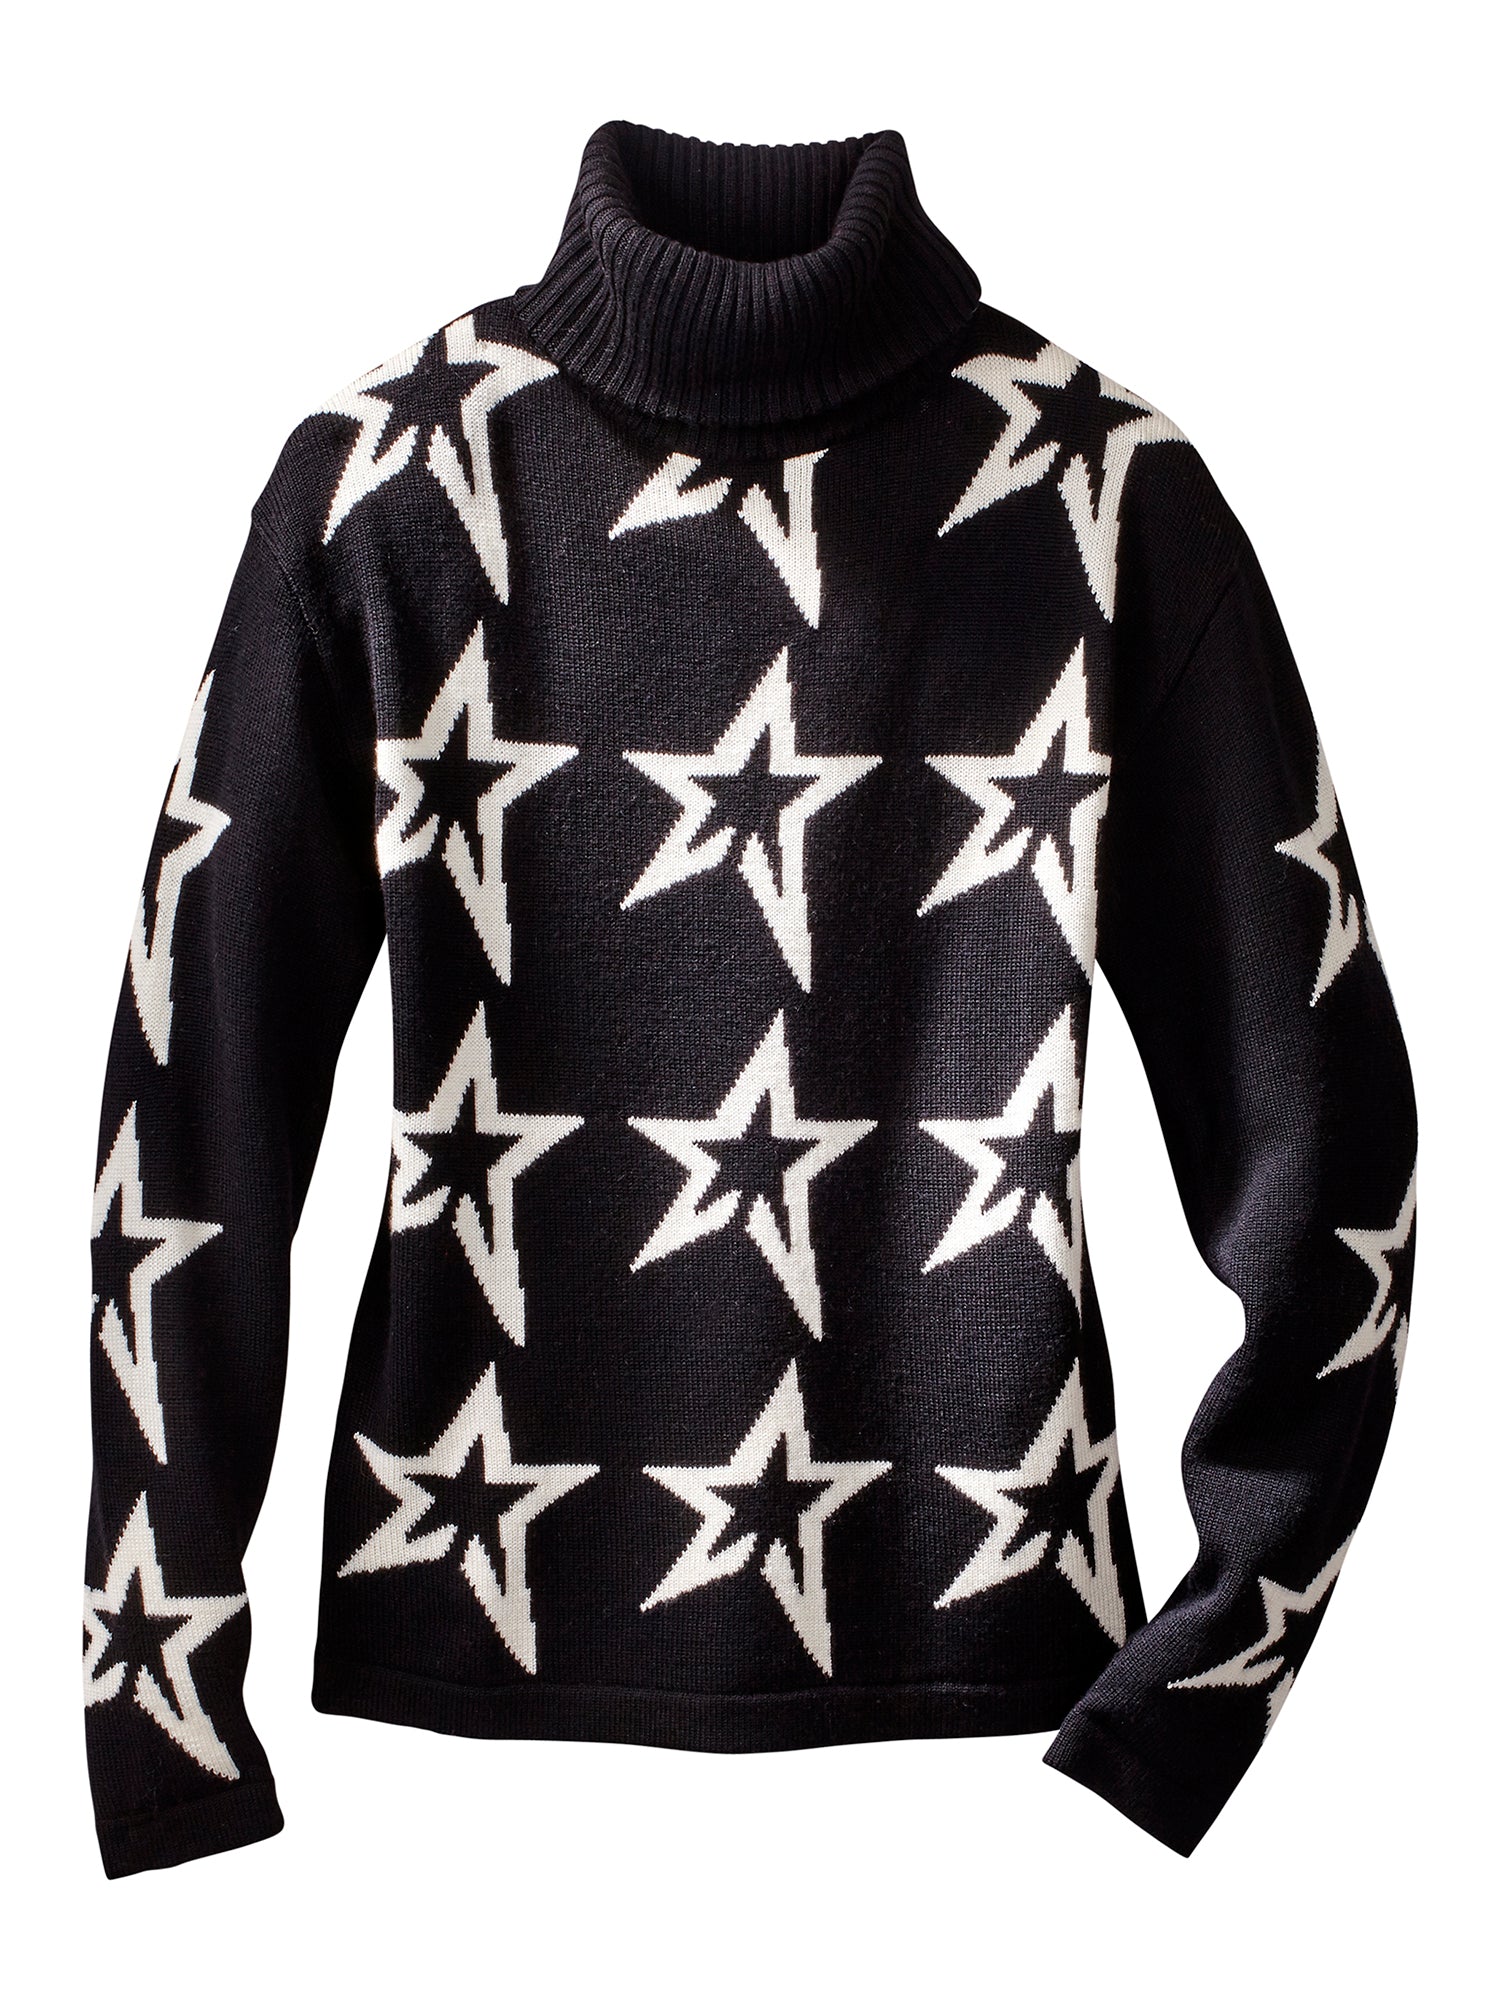 Stardust Whisper Mock Neck Sweater